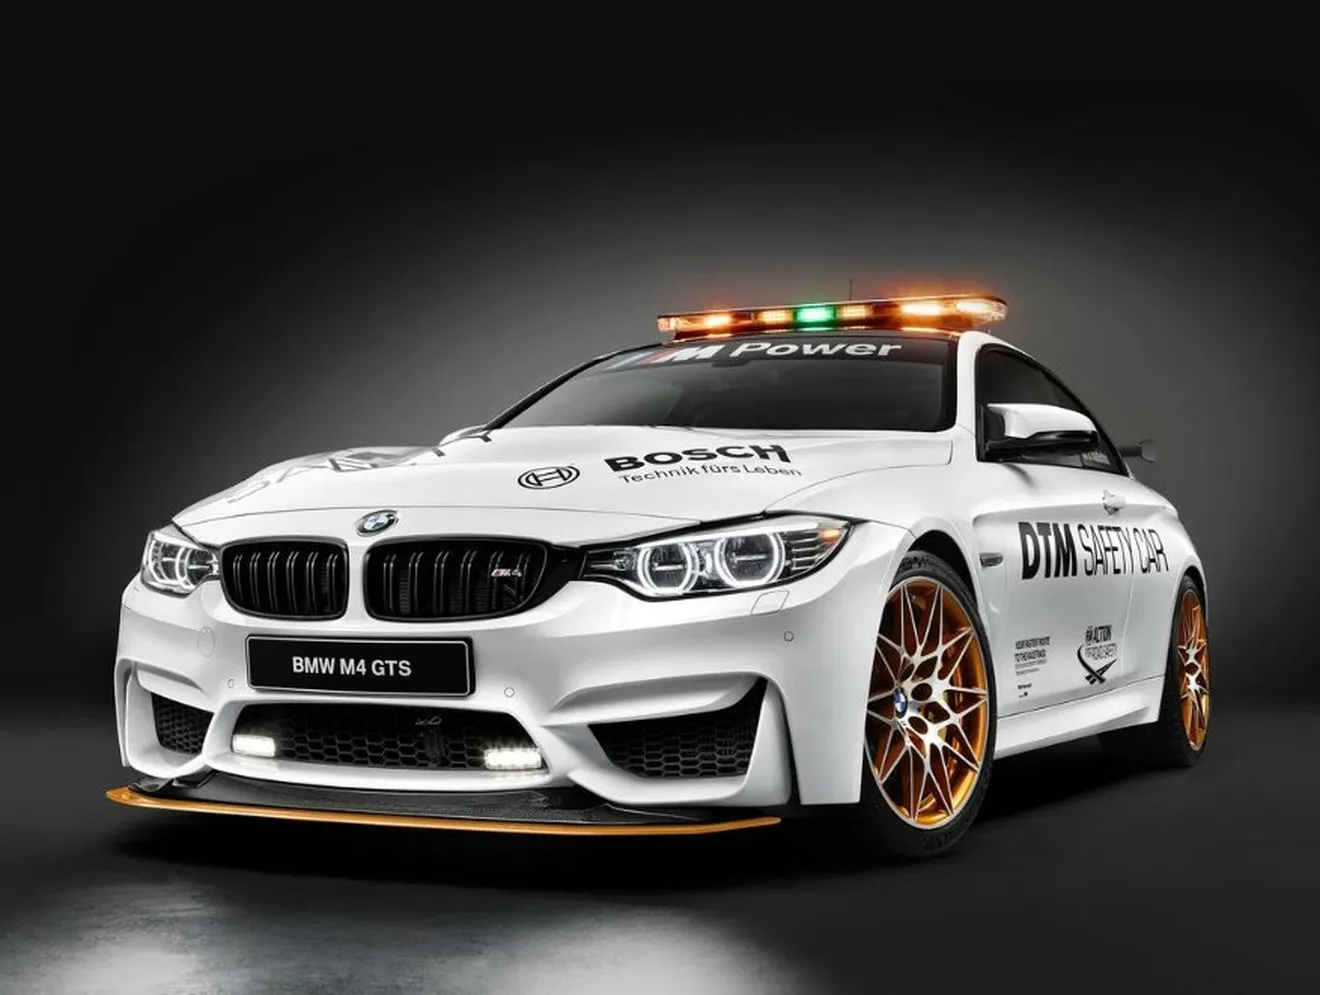 El BMW M4 GTS se convierte en el espectacular 'Safety Car' del DTM 2016